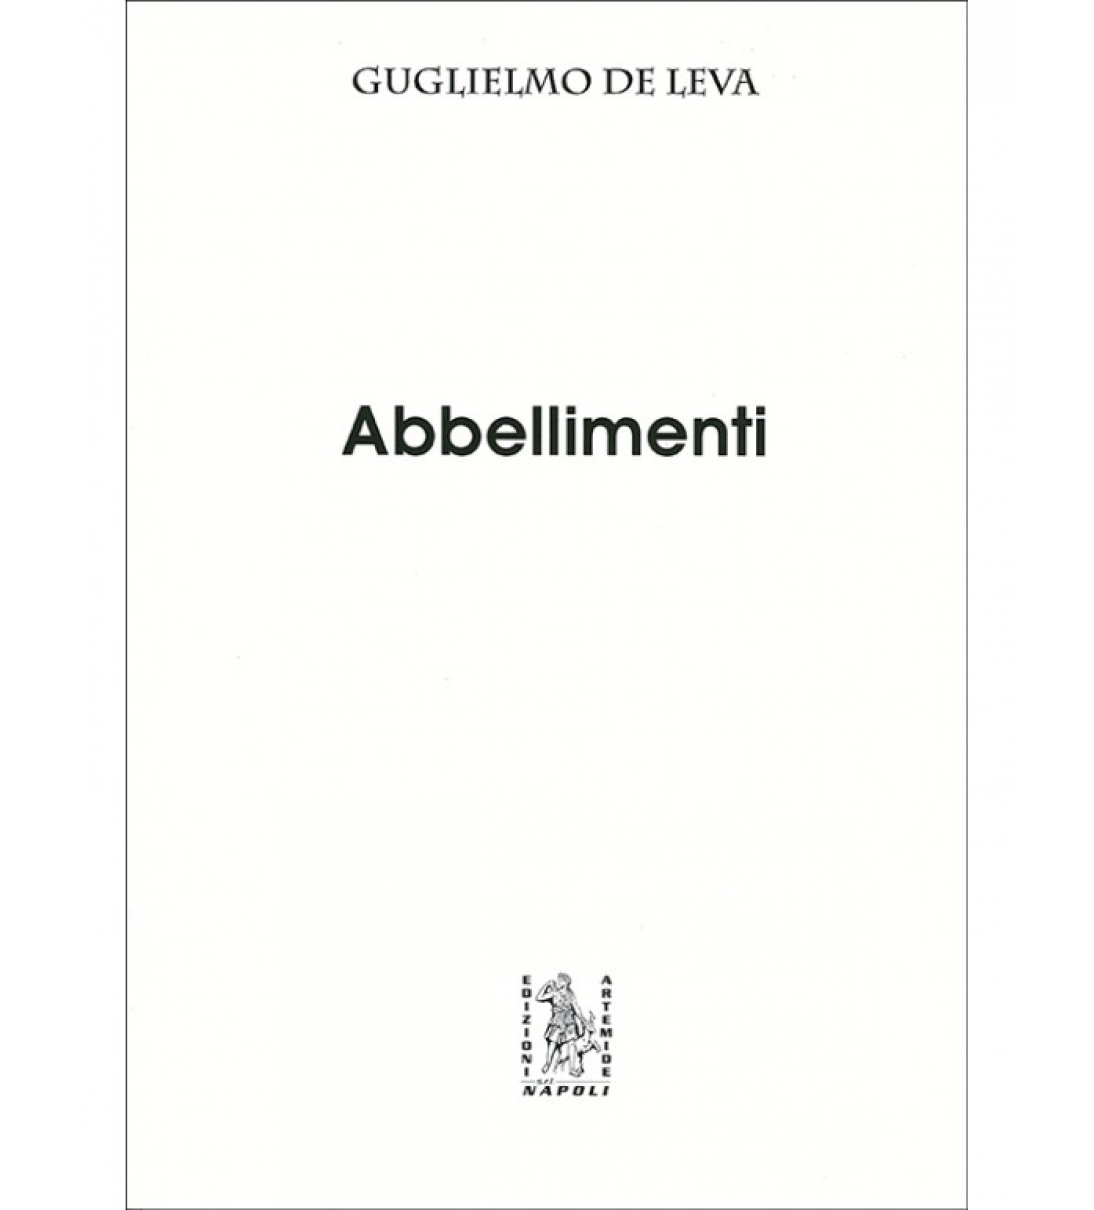 Abbellimenti - Guglielmo De Leva